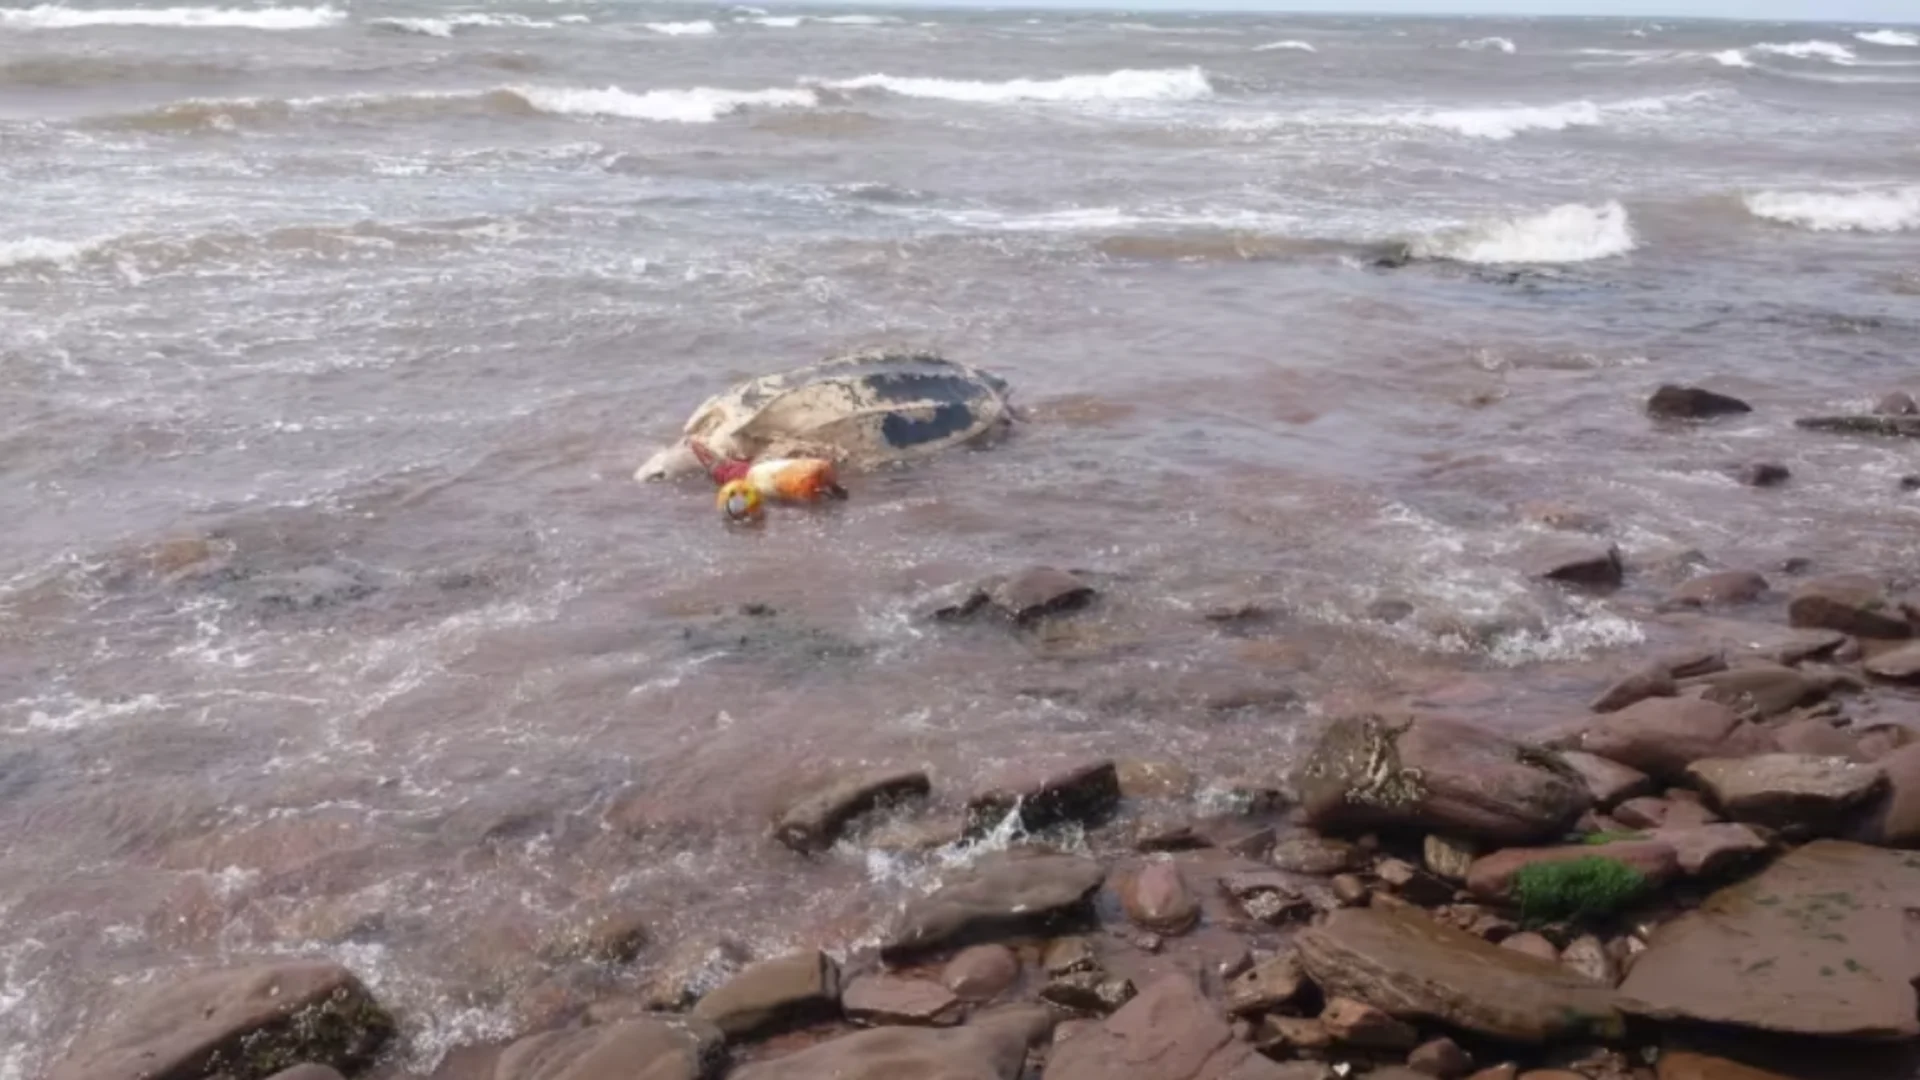 A massive, rare sea turtle washed up on P.E.I.